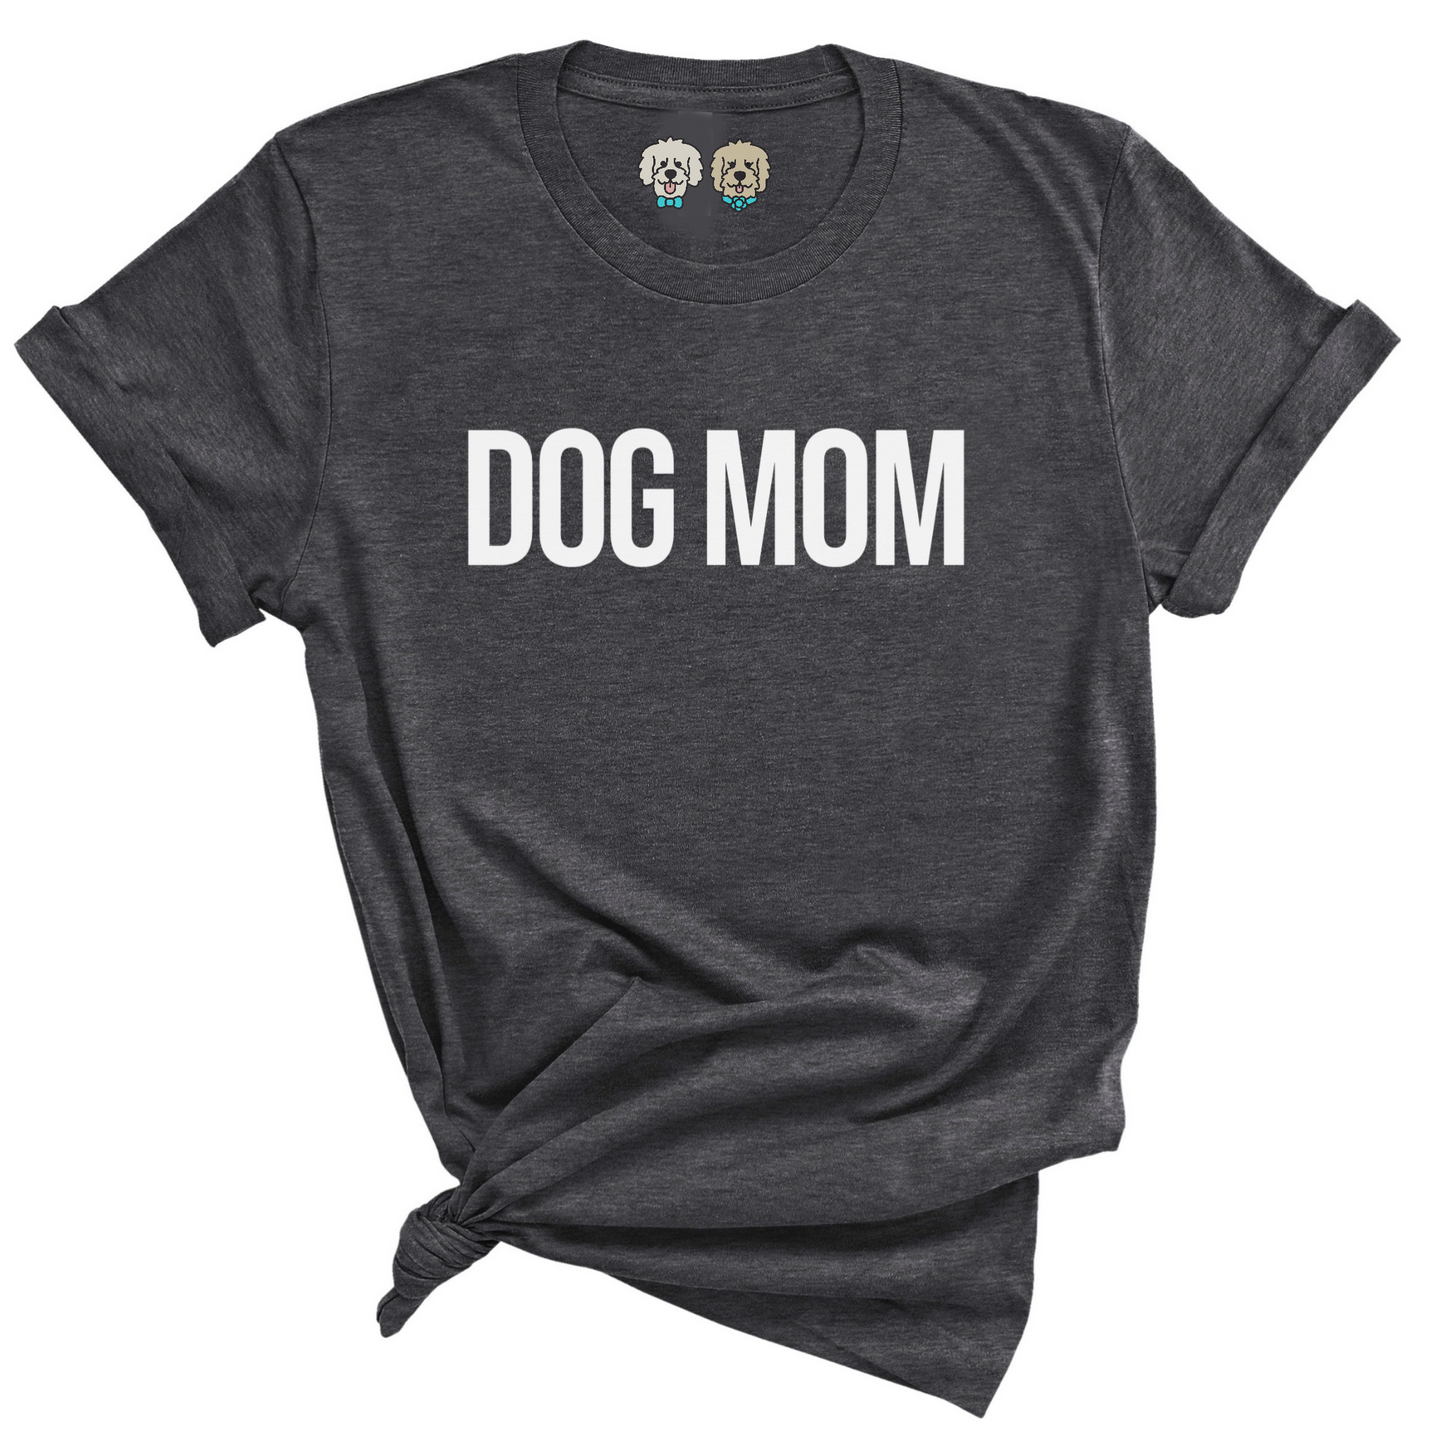 DOG MOM -  CHARCOAL TSHIRT